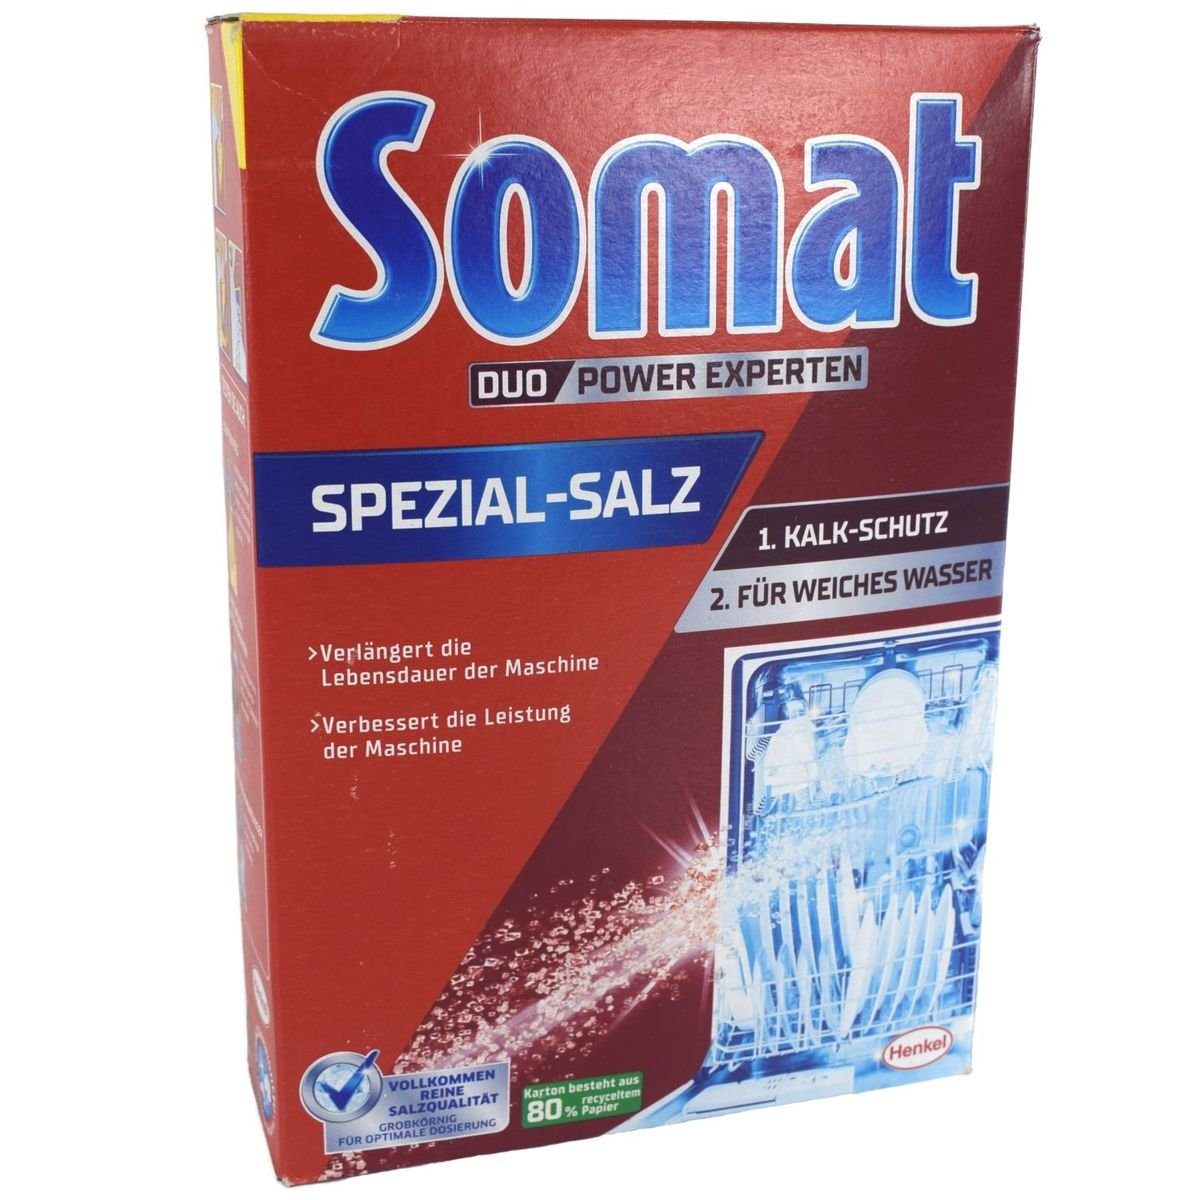 Spülmaschinen Kalk-Schutz Spülmaschinensalz Leistung Somat kg HENKEL & (1-St. weiches Spezial-Salz 1,2 verbessert die Wasser) für